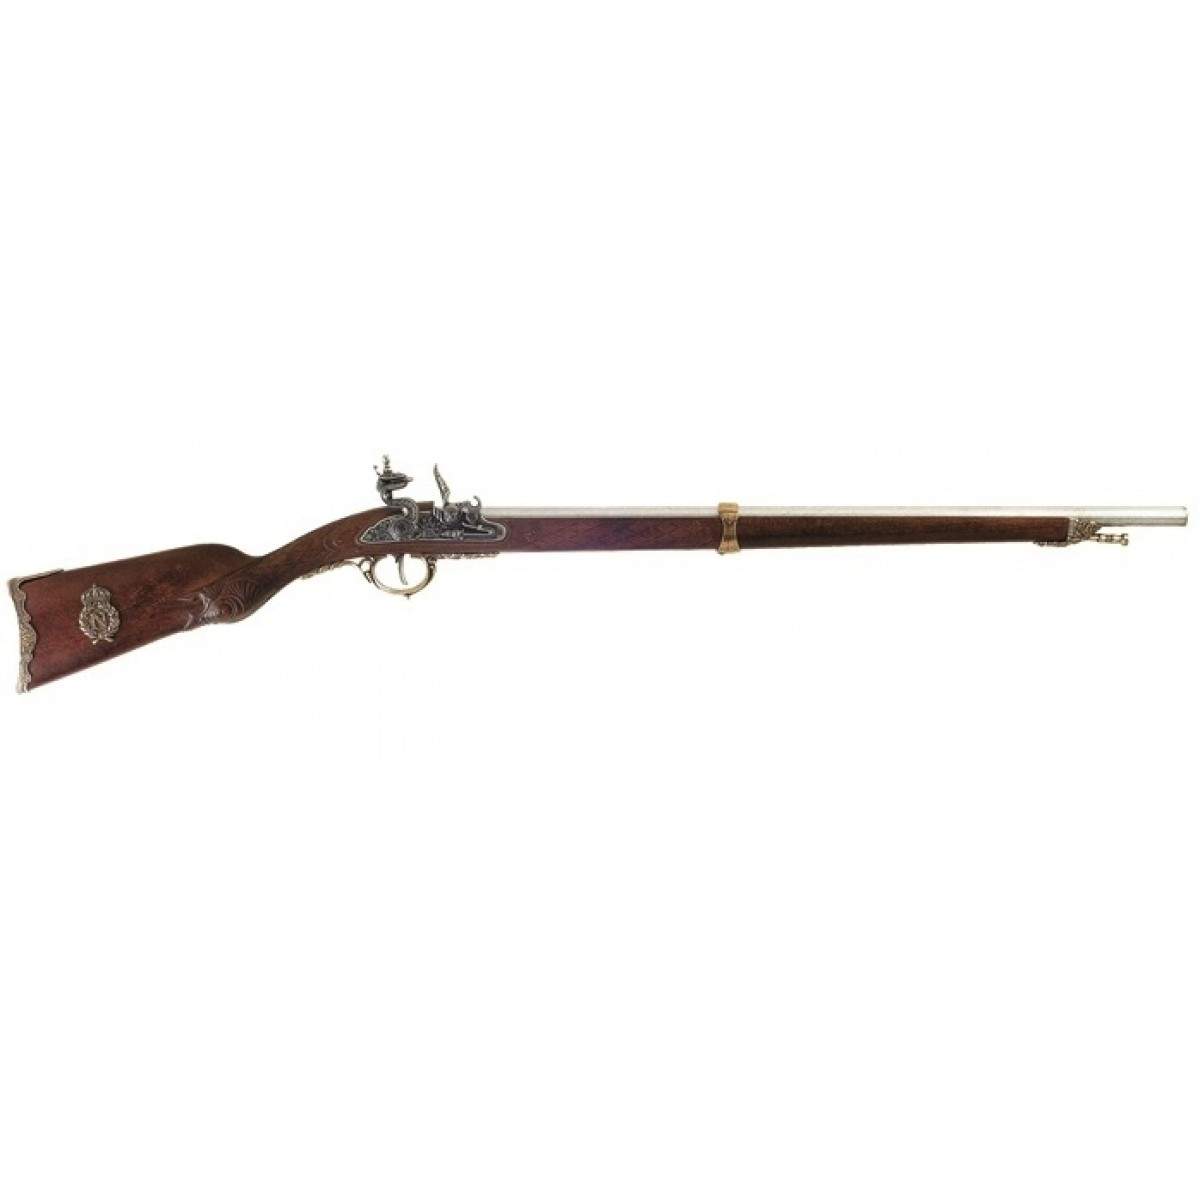 С молотка было продано охотничье ружье Наполеона за 80 тыс. евро